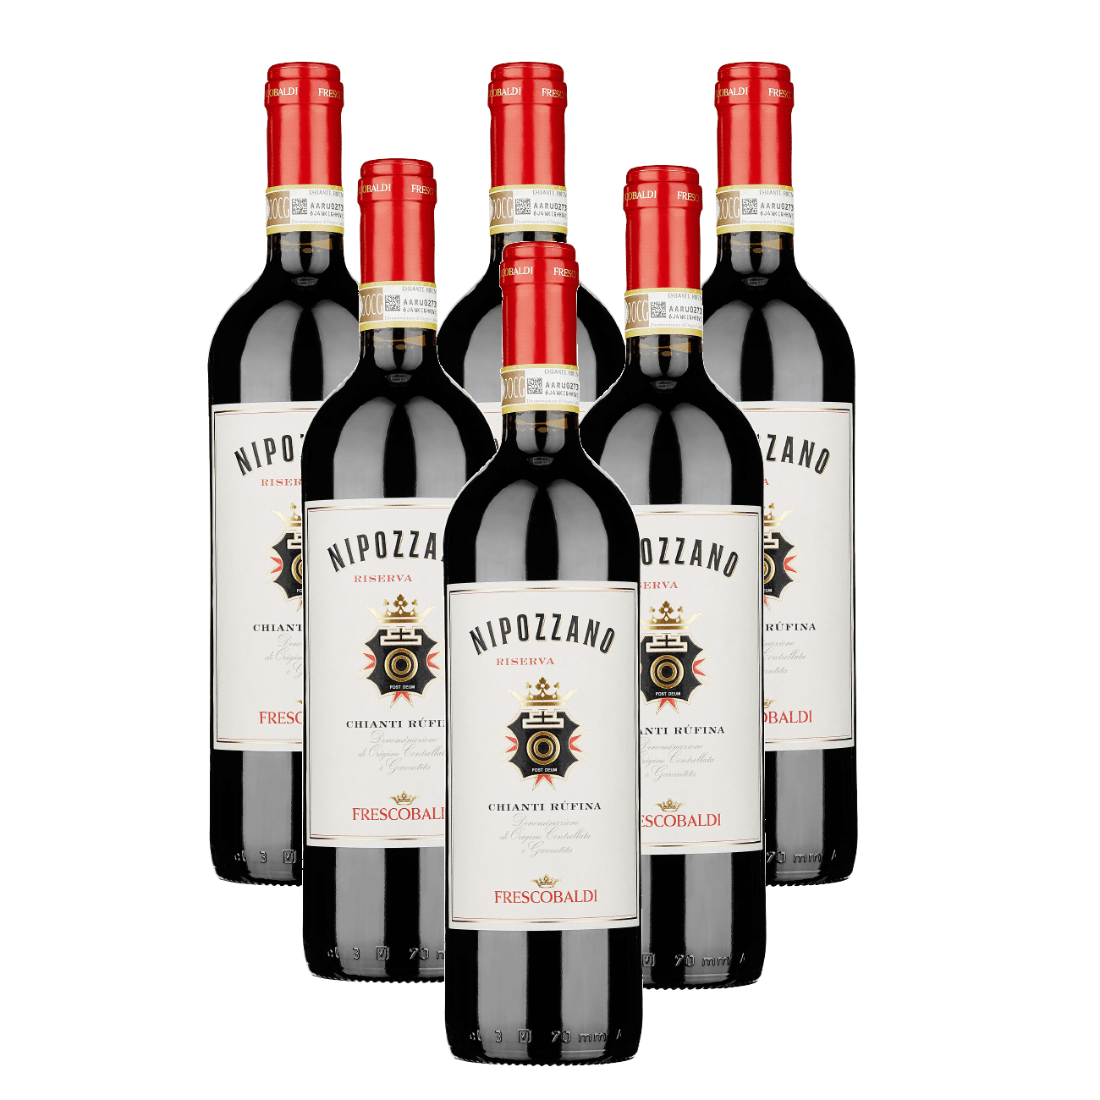 Chianti Rufina 2019 Riserva Docg Castello di Nipozzano 6 bottiglie - Frescobaldi-Vinolog24.com